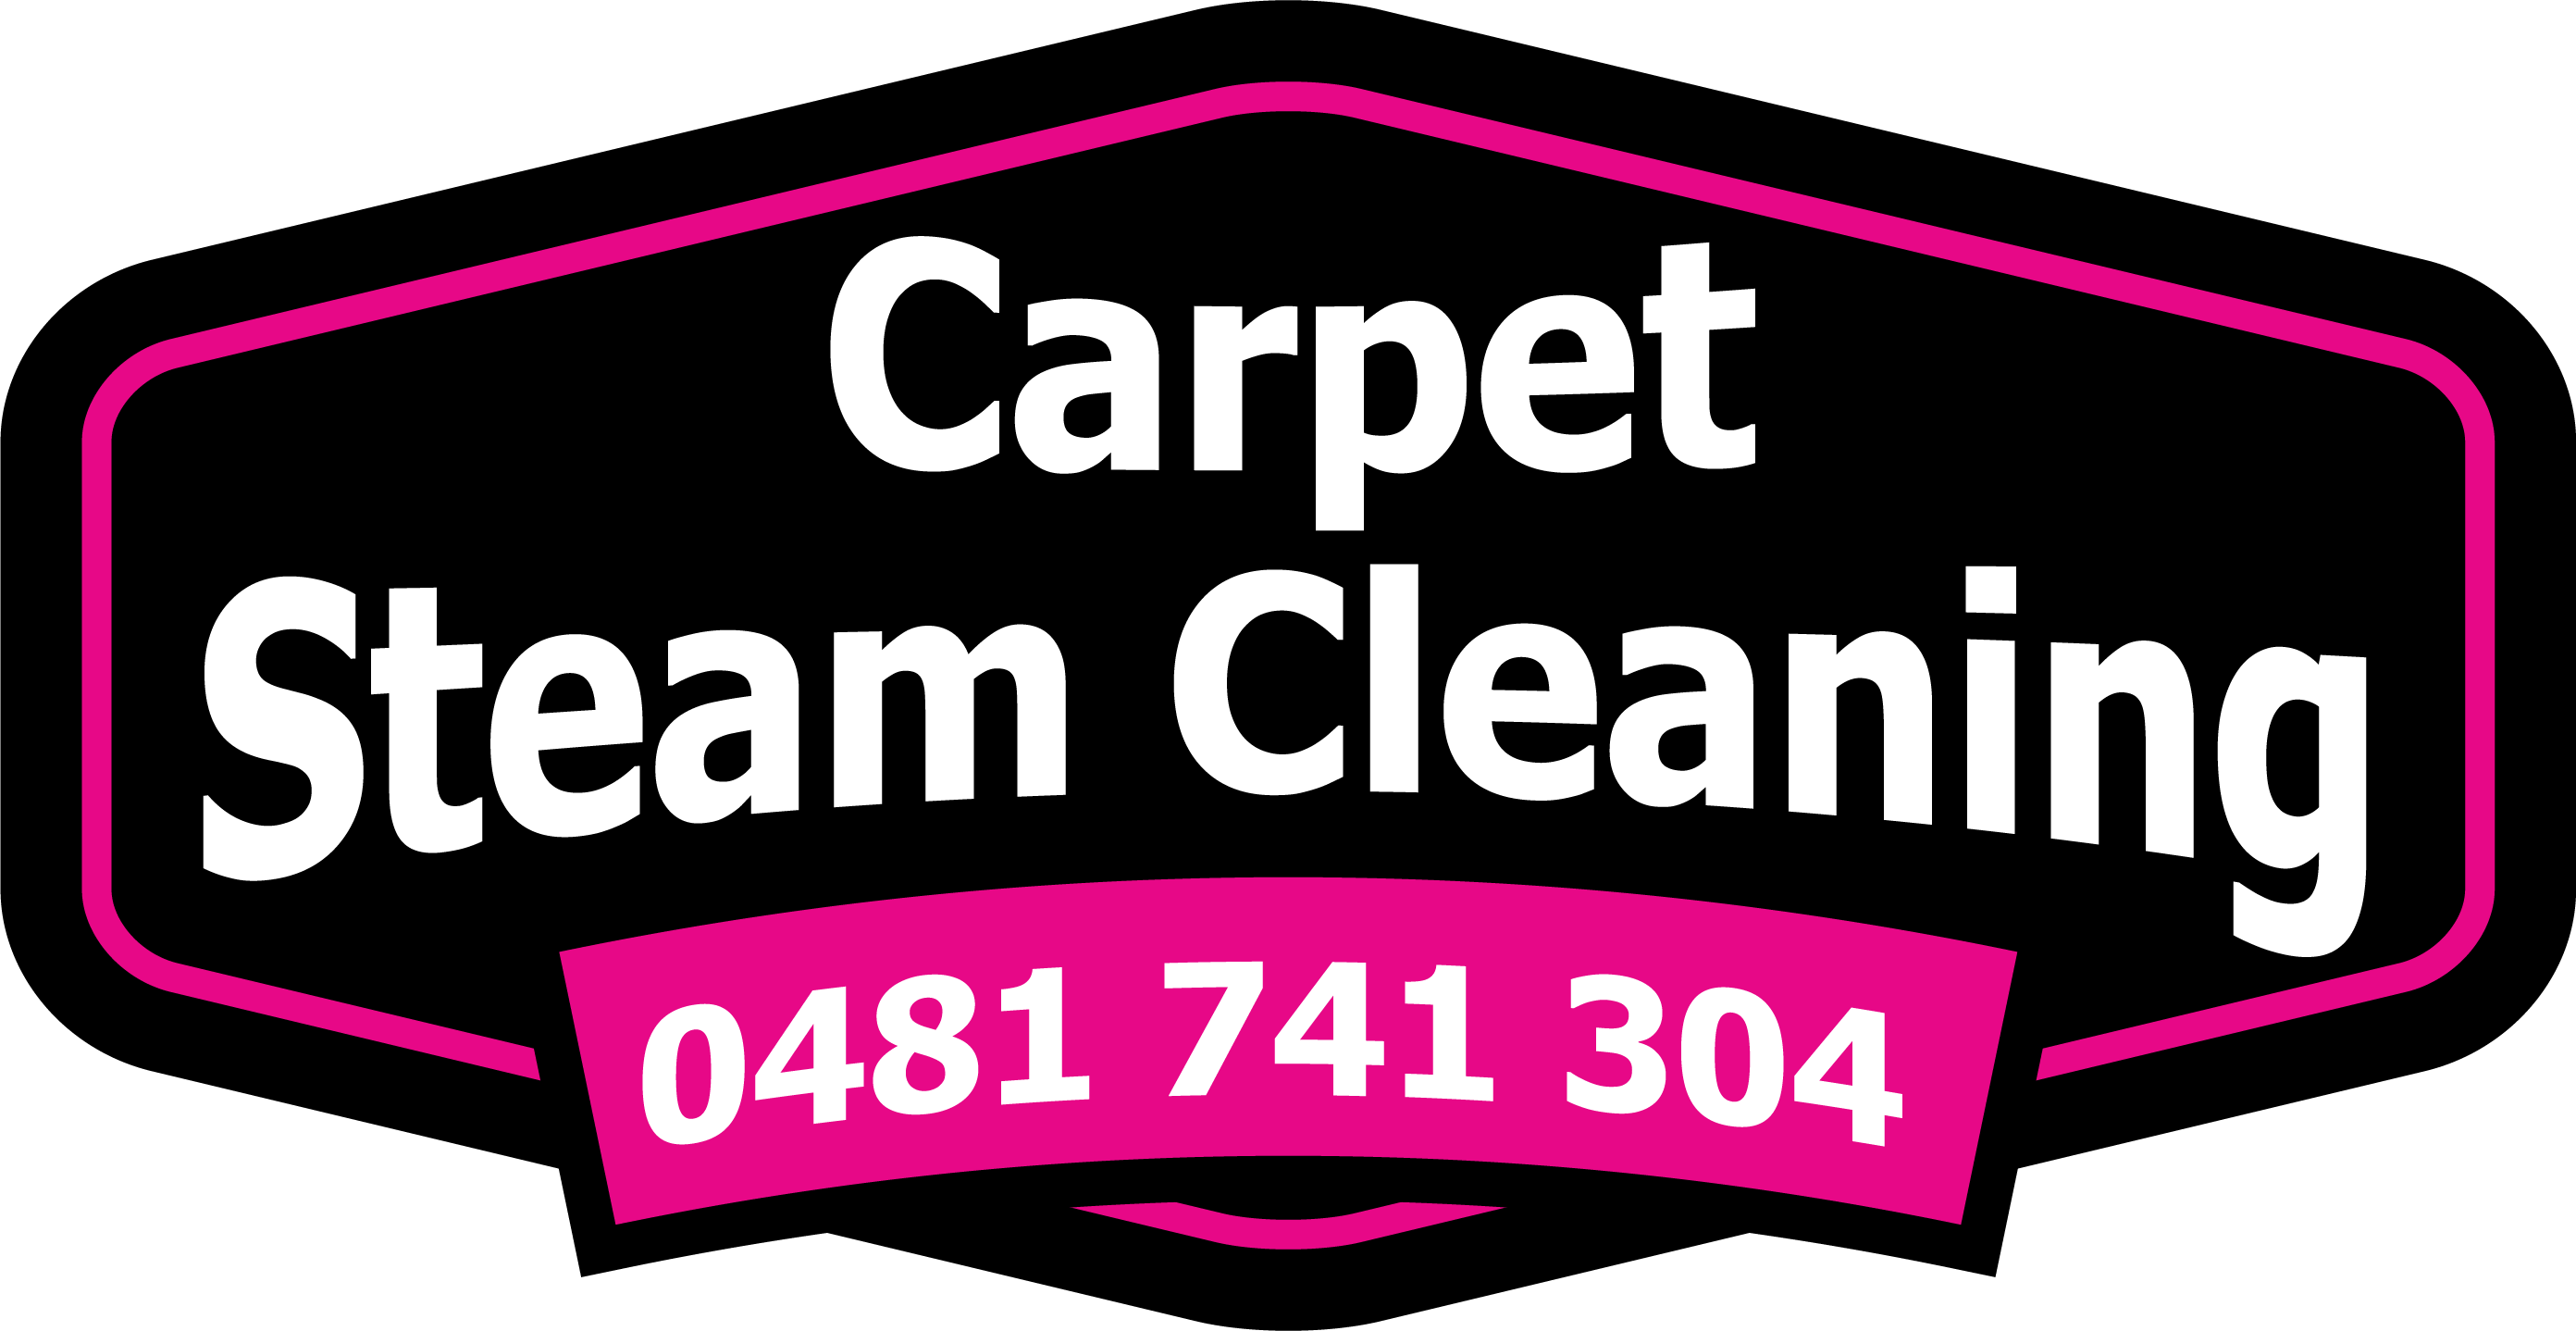 Carpet Steam Clean Ipswich